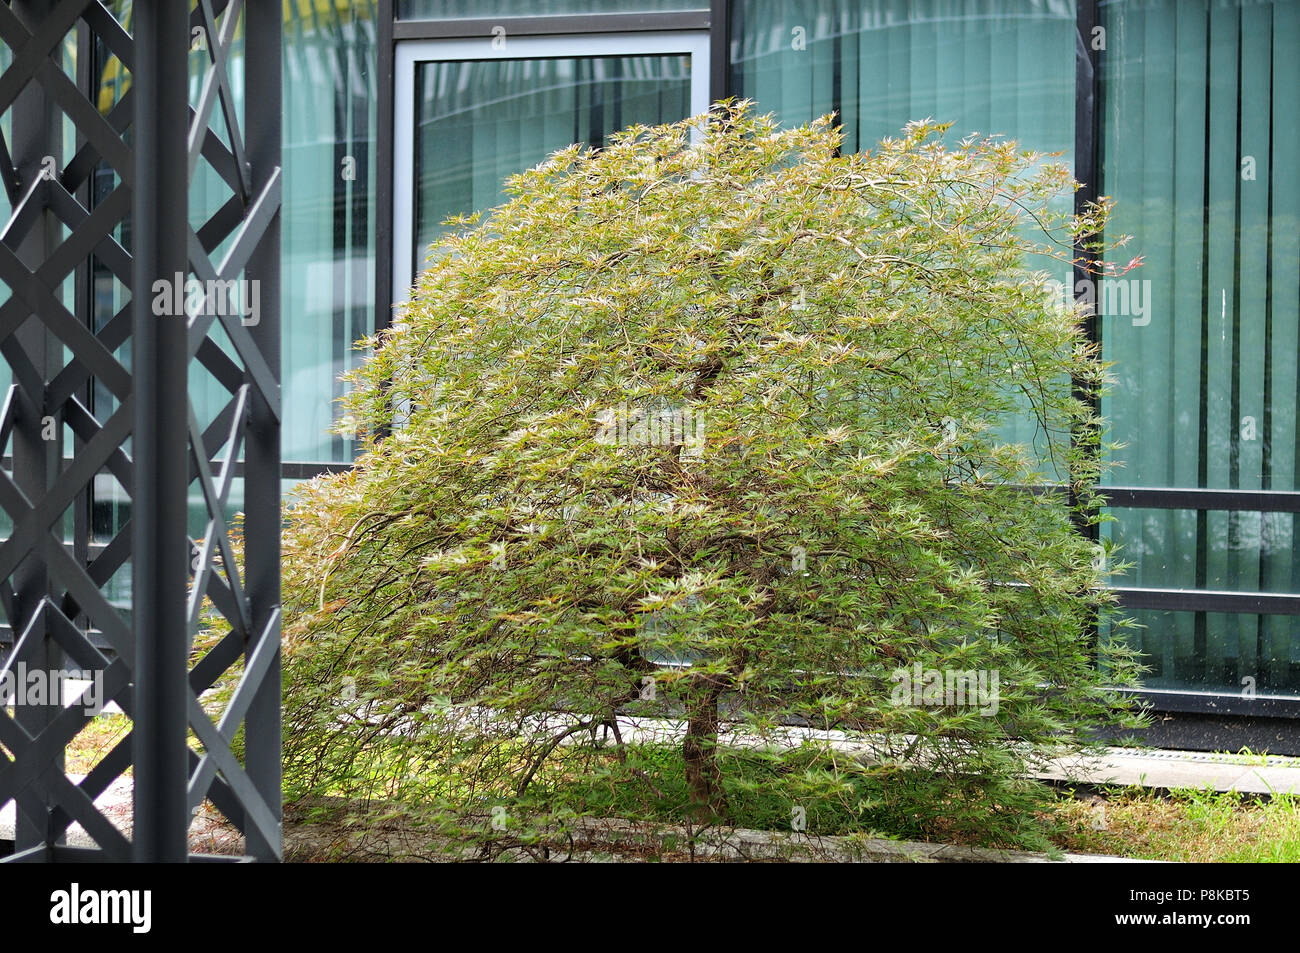 Japanischer Ahorn baum Seiryu mit seziert Blätter wächst als kleiner Baum in städtischen Geschäftsviertel Stockfoto